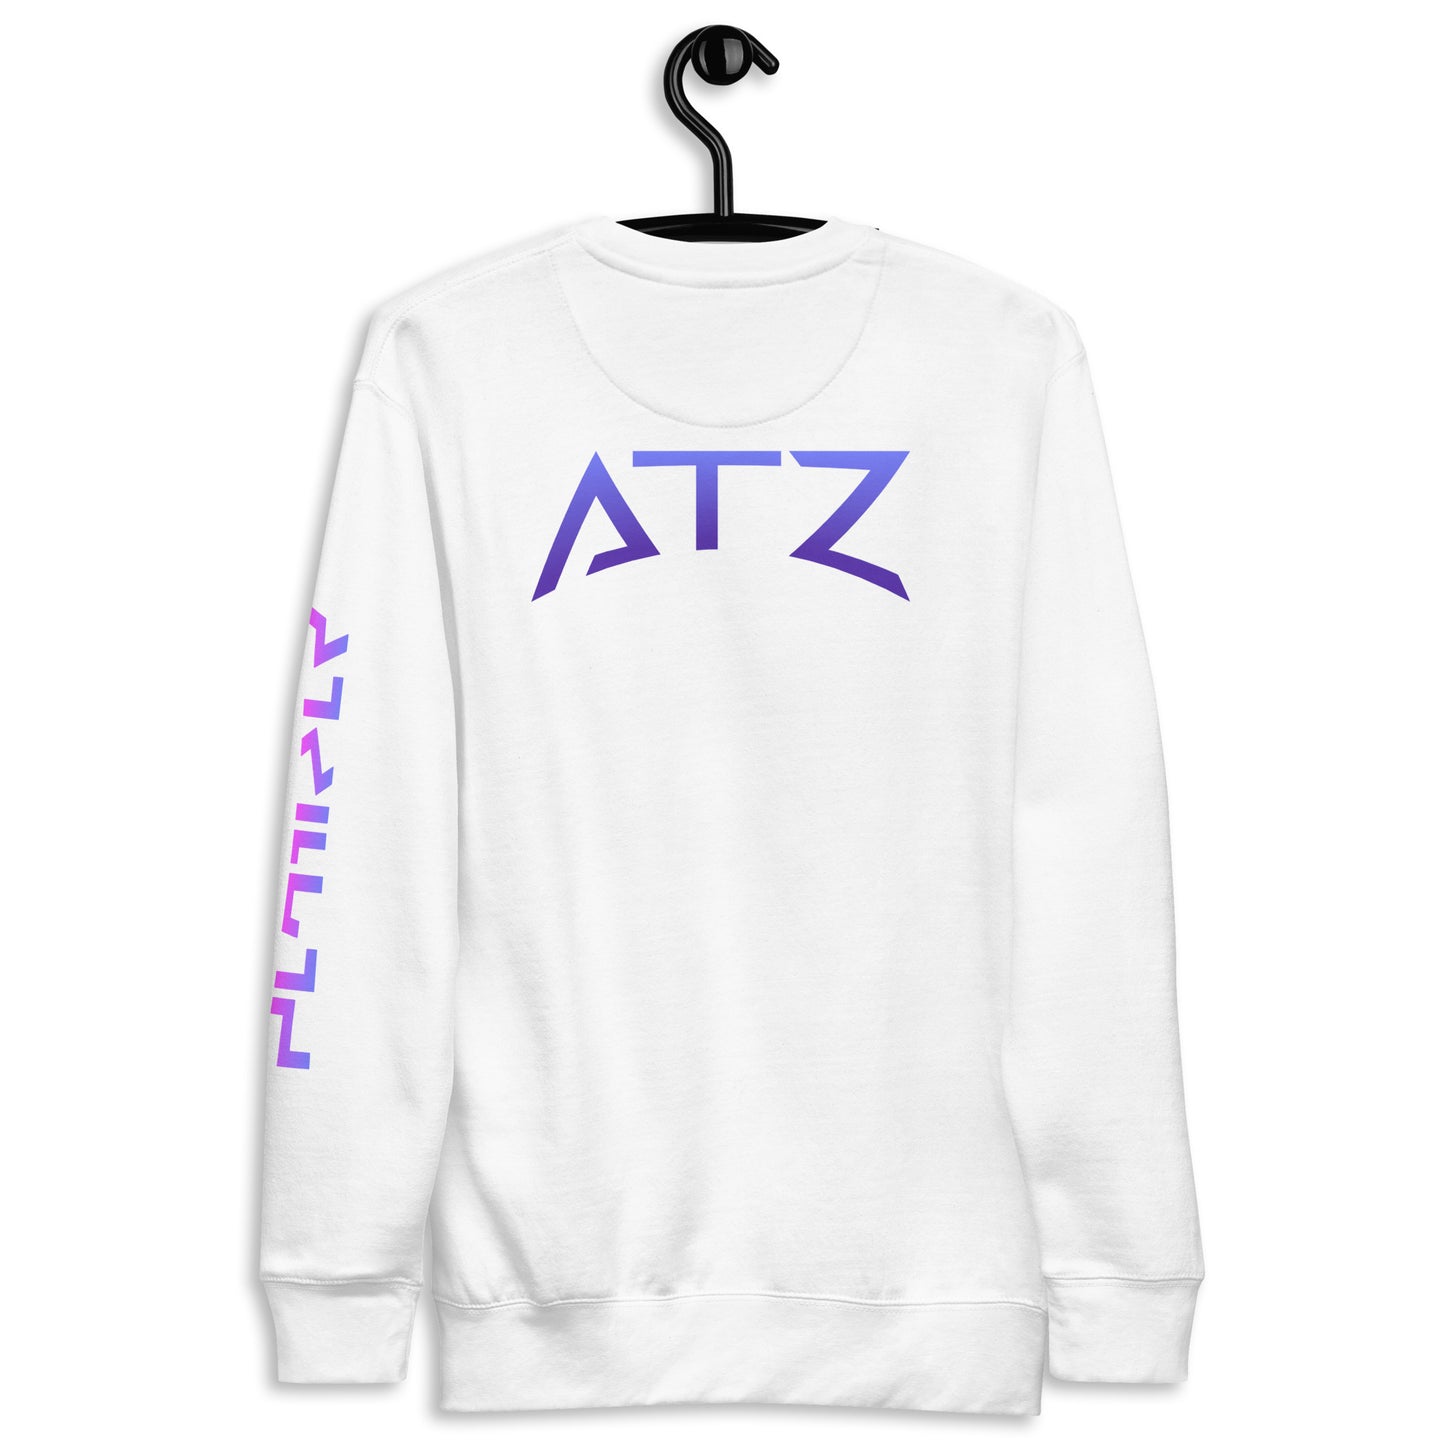 ATZ Unisex Premium Sweatshirt